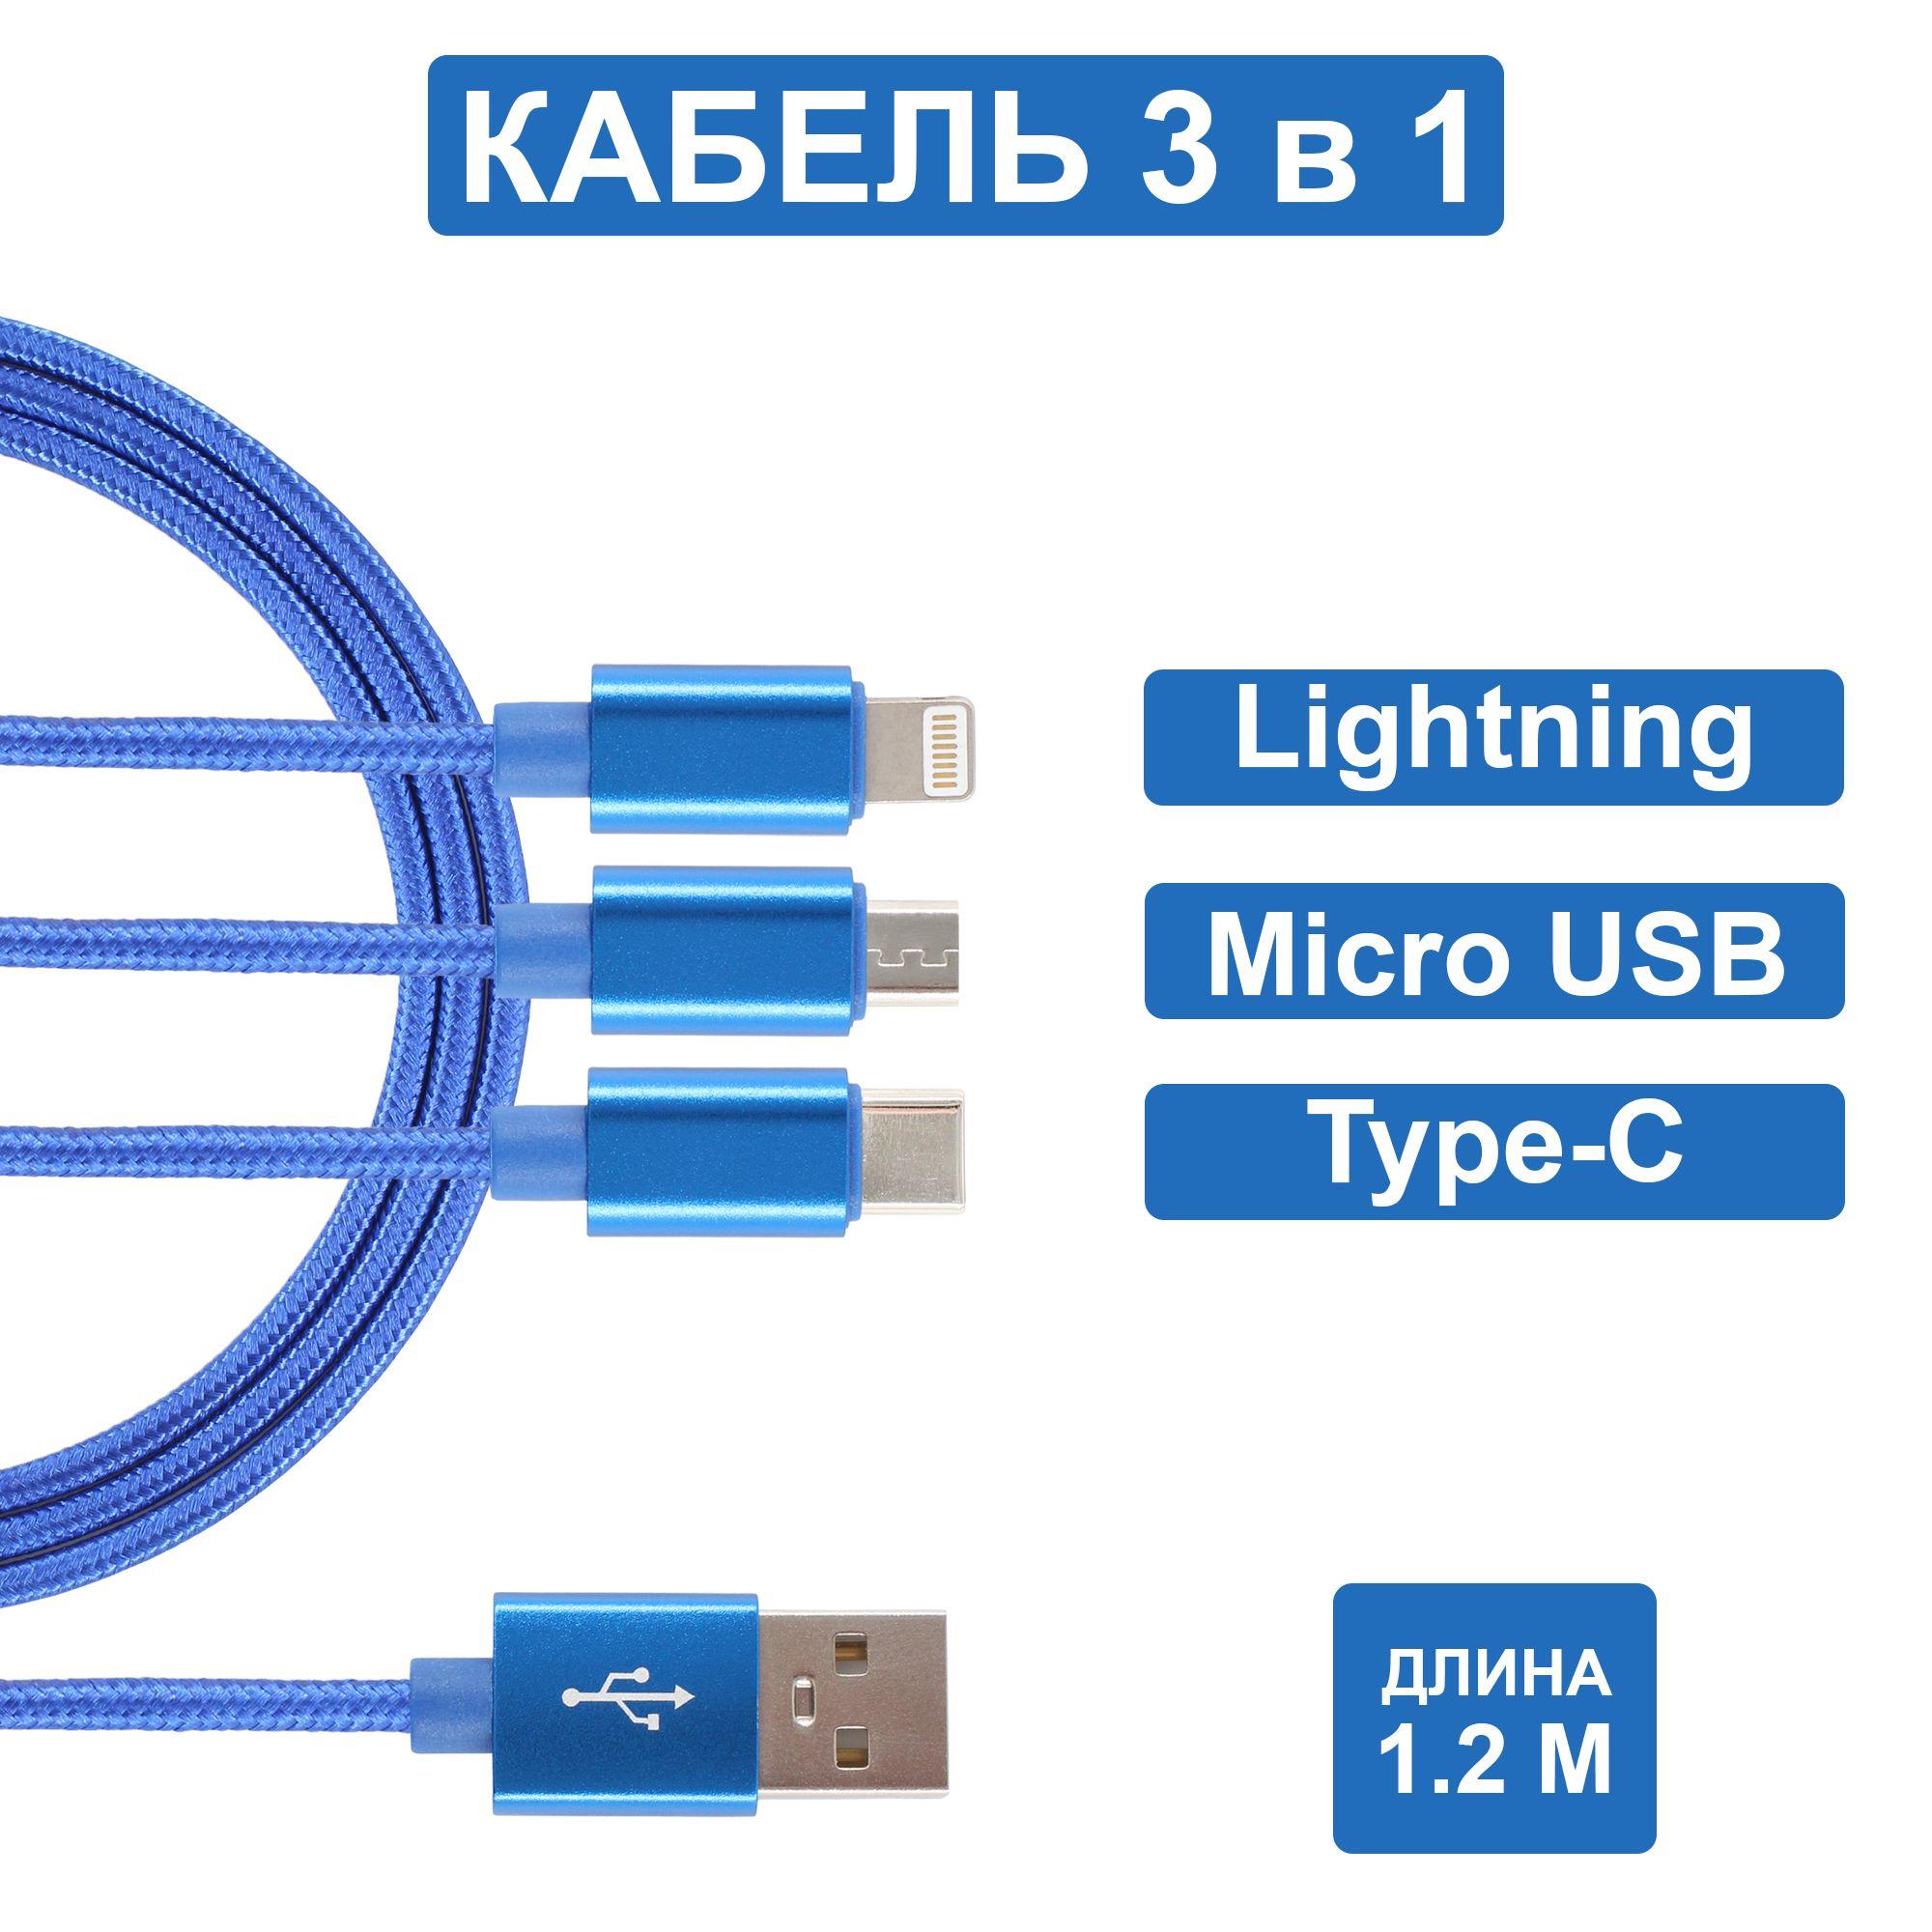 Jamme | Usb кабель для зарядки 3 в 1 (Lightning, TYPE-C, MICRO USB)/ usb провод 1,2м/ Зарядка для iphone/ Зарядка для Android/ Универсальный usb кабель/ Кабель 3 в одном Jamme